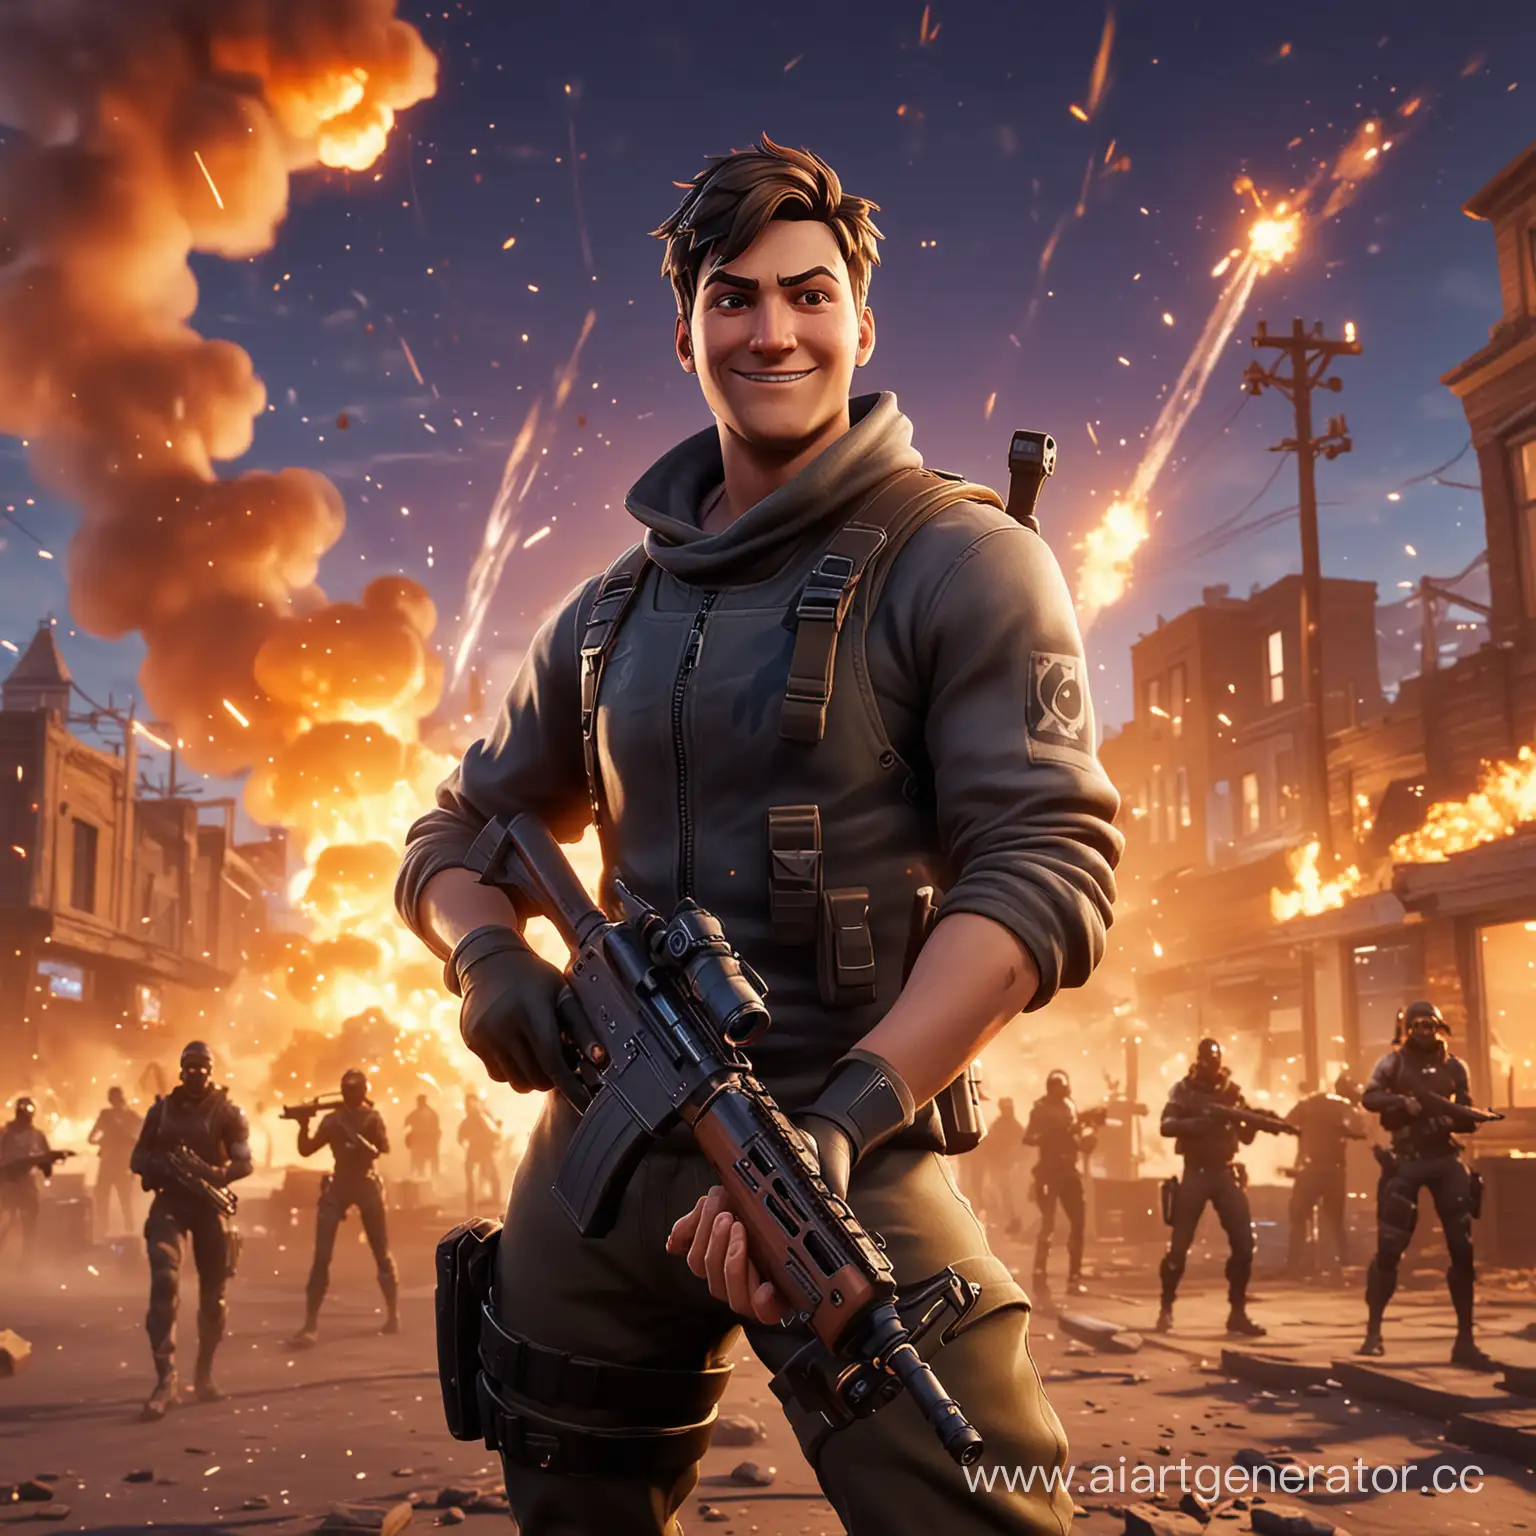 персонаж из игры фортнайт смотрит в камеру на фоне взрывов, в руке у него автомат лицо с улыбкой, обстановка динамическая